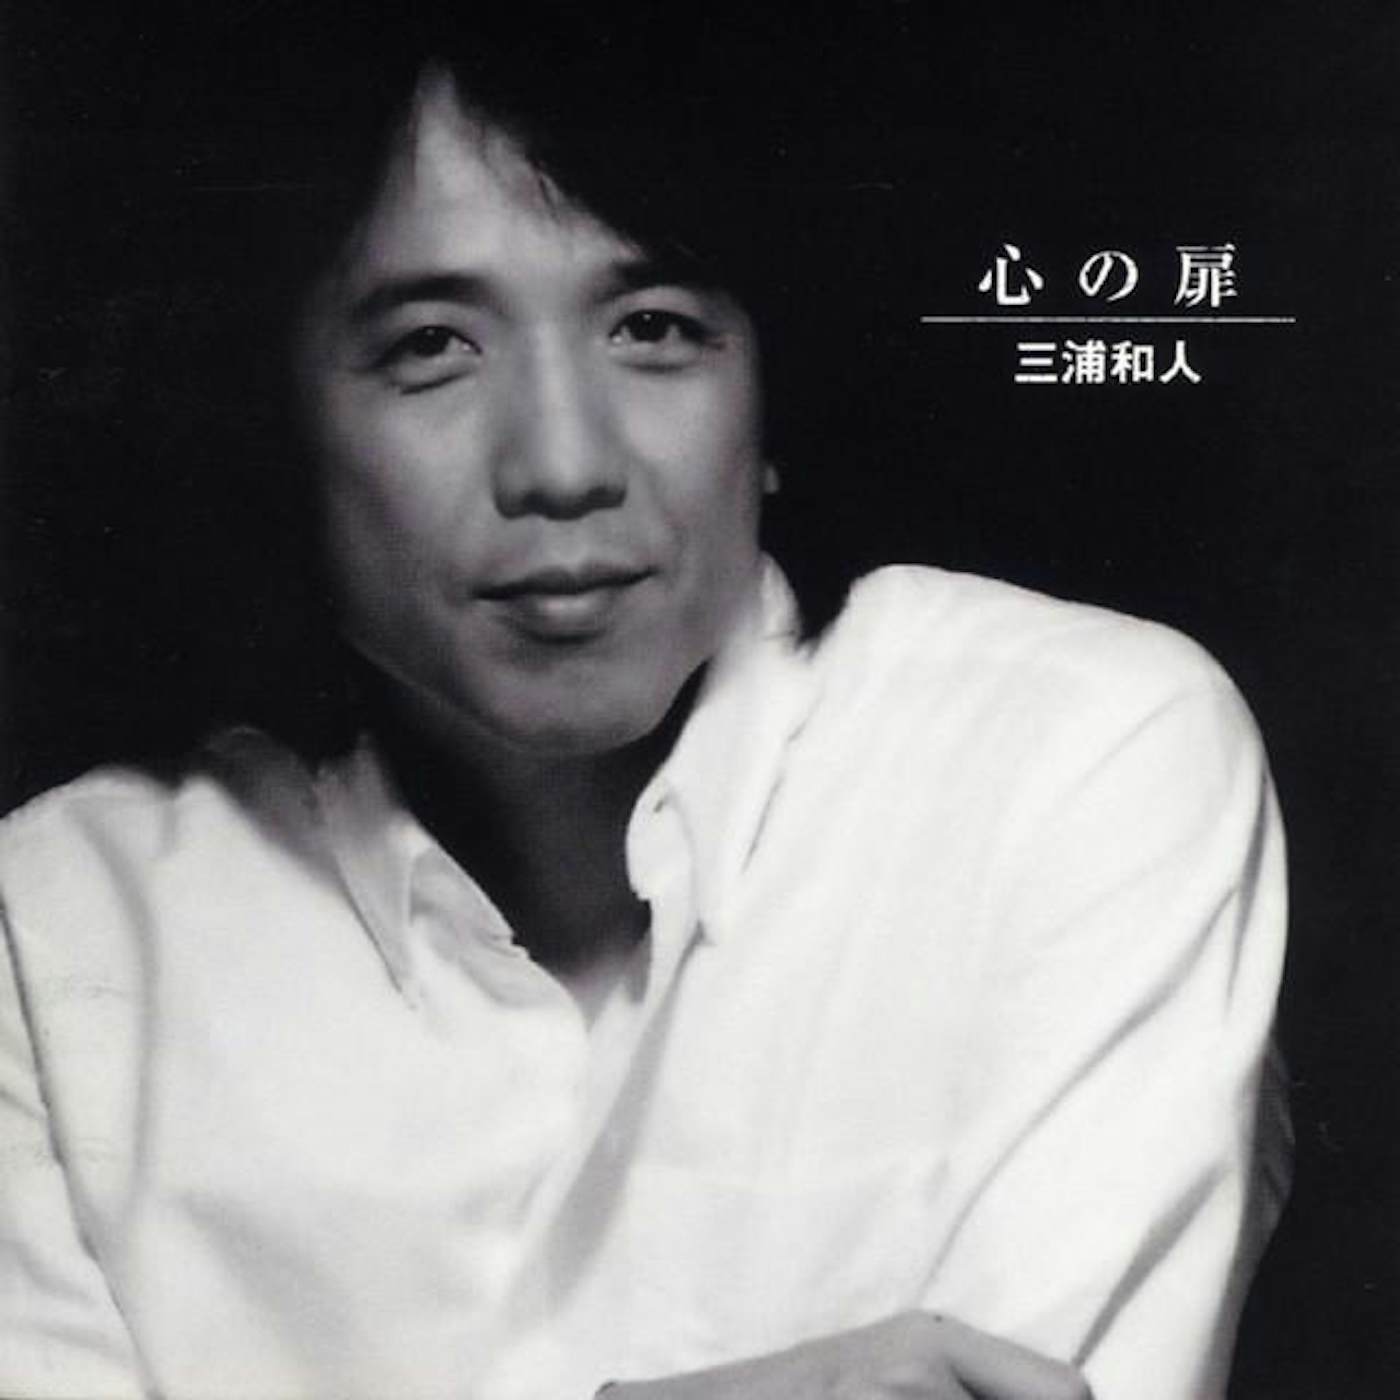 Kazuto Miura